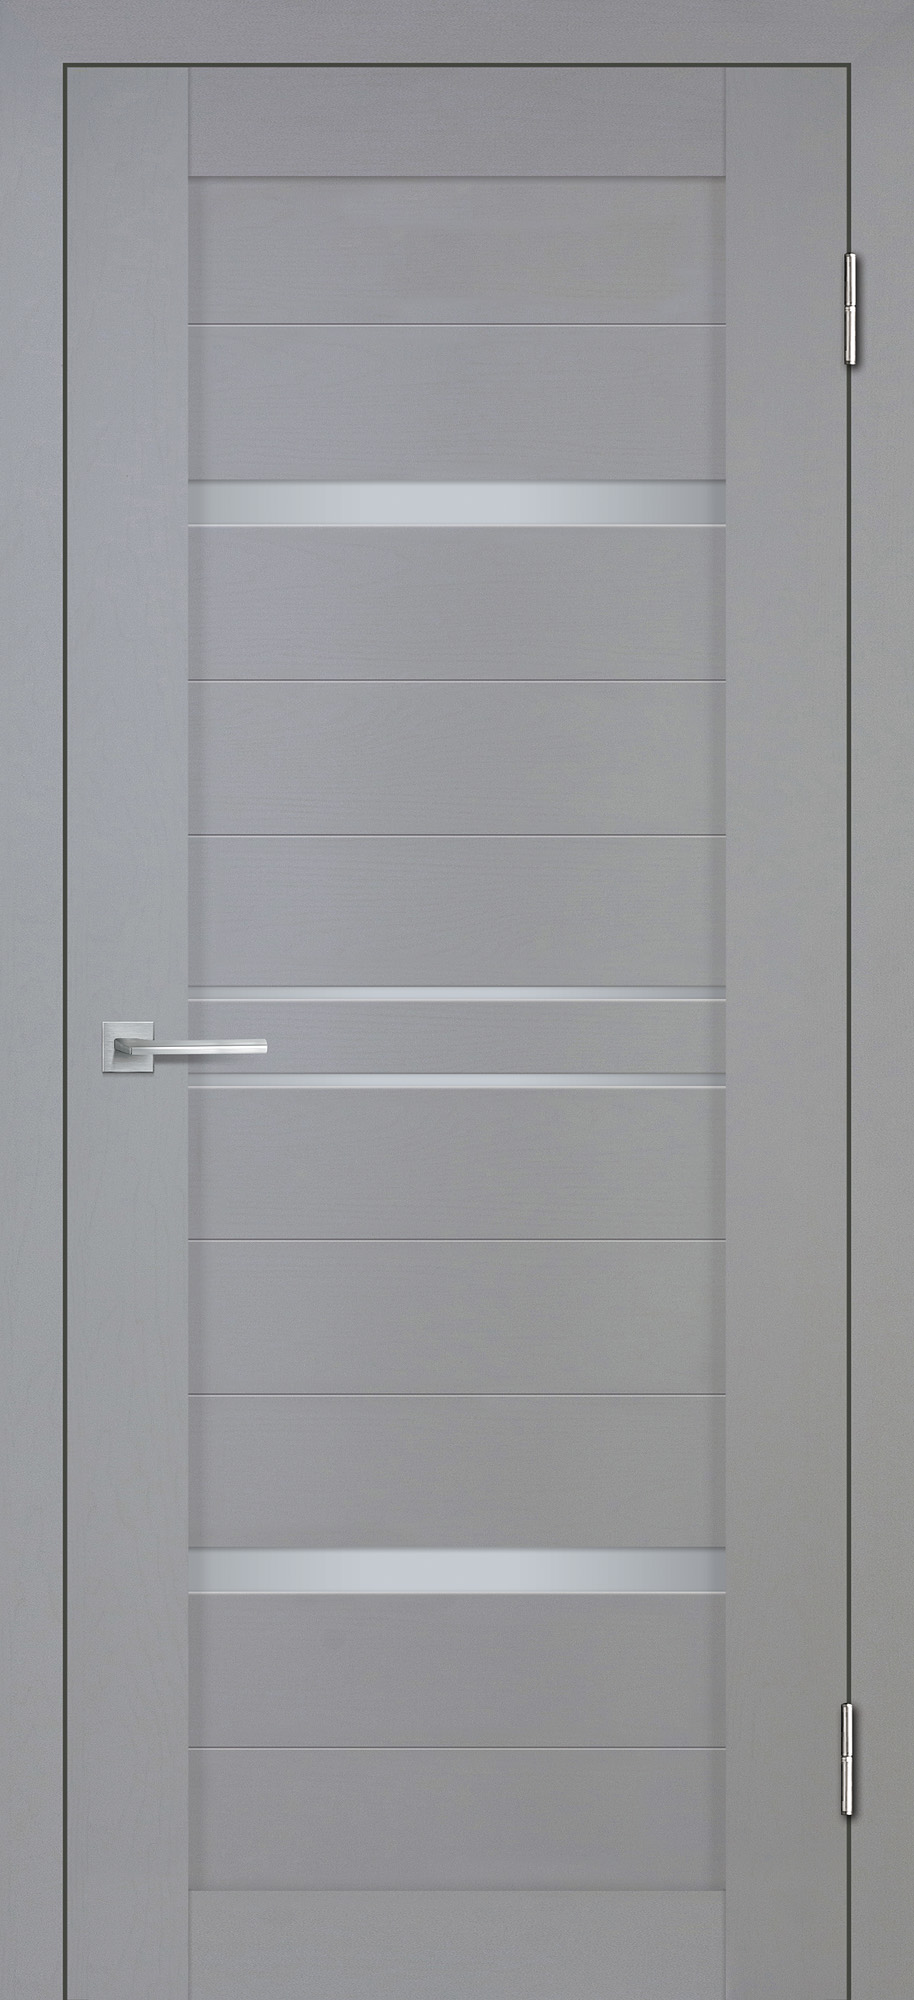 Двери ЭКОШПОН, ПВХ STABILE PORTE Деко-18 nanotex soft со стеклом серый тик размер 200 х 60 см. артикул F0000092423